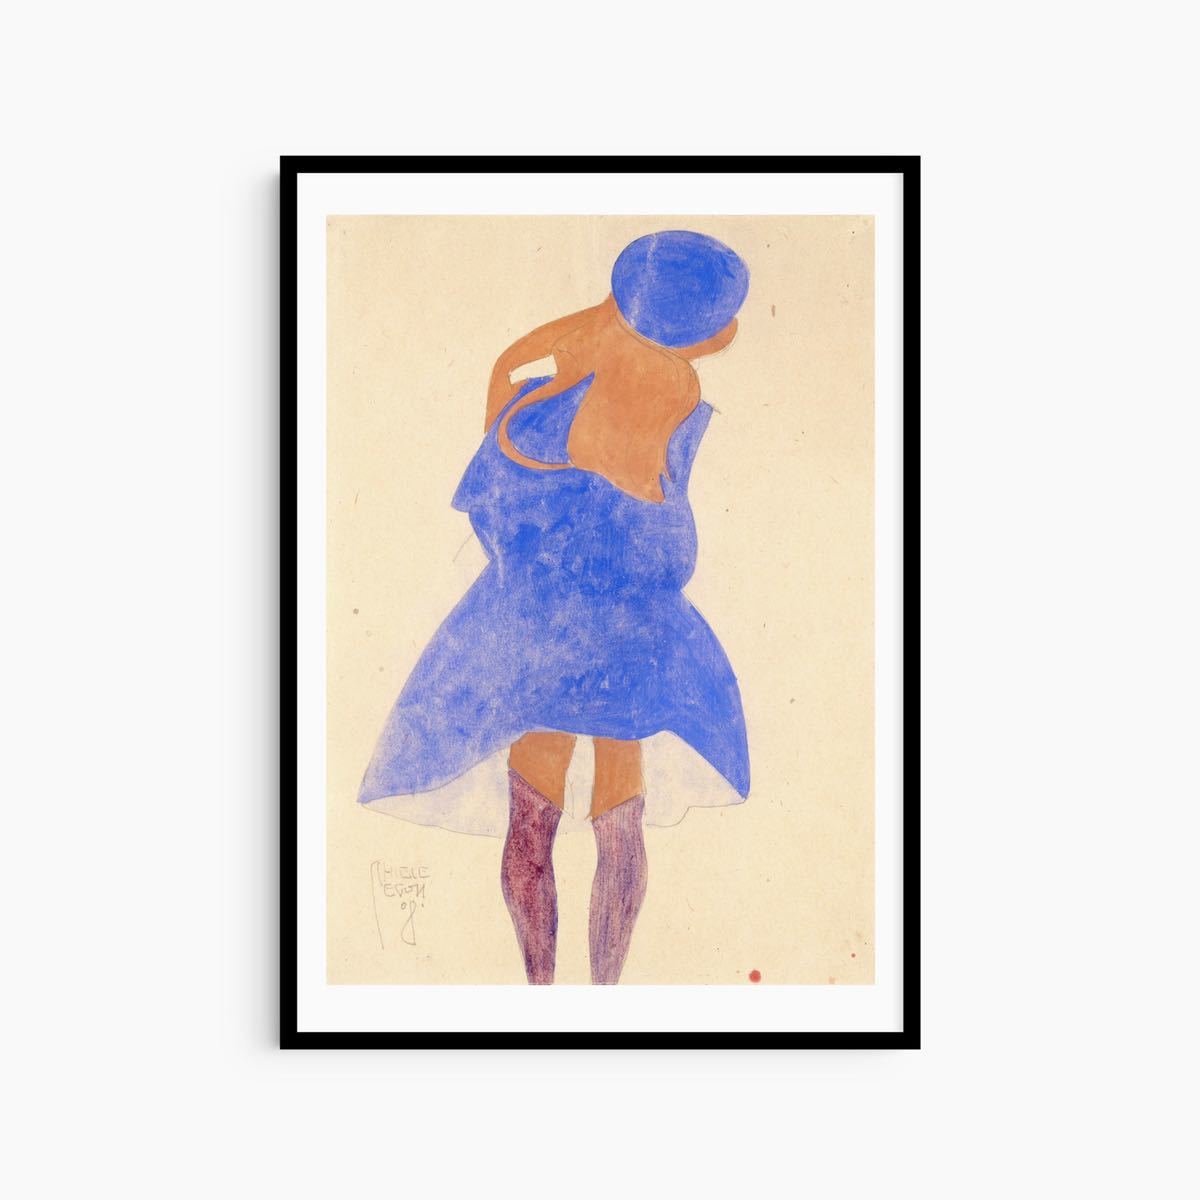 Egon Schiele 표현주의 추상 회화 미술 회화 포스터 빈티지 미술 현대 미술 현대 미술 초상화, 인쇄물, 포스터, 다른 사람